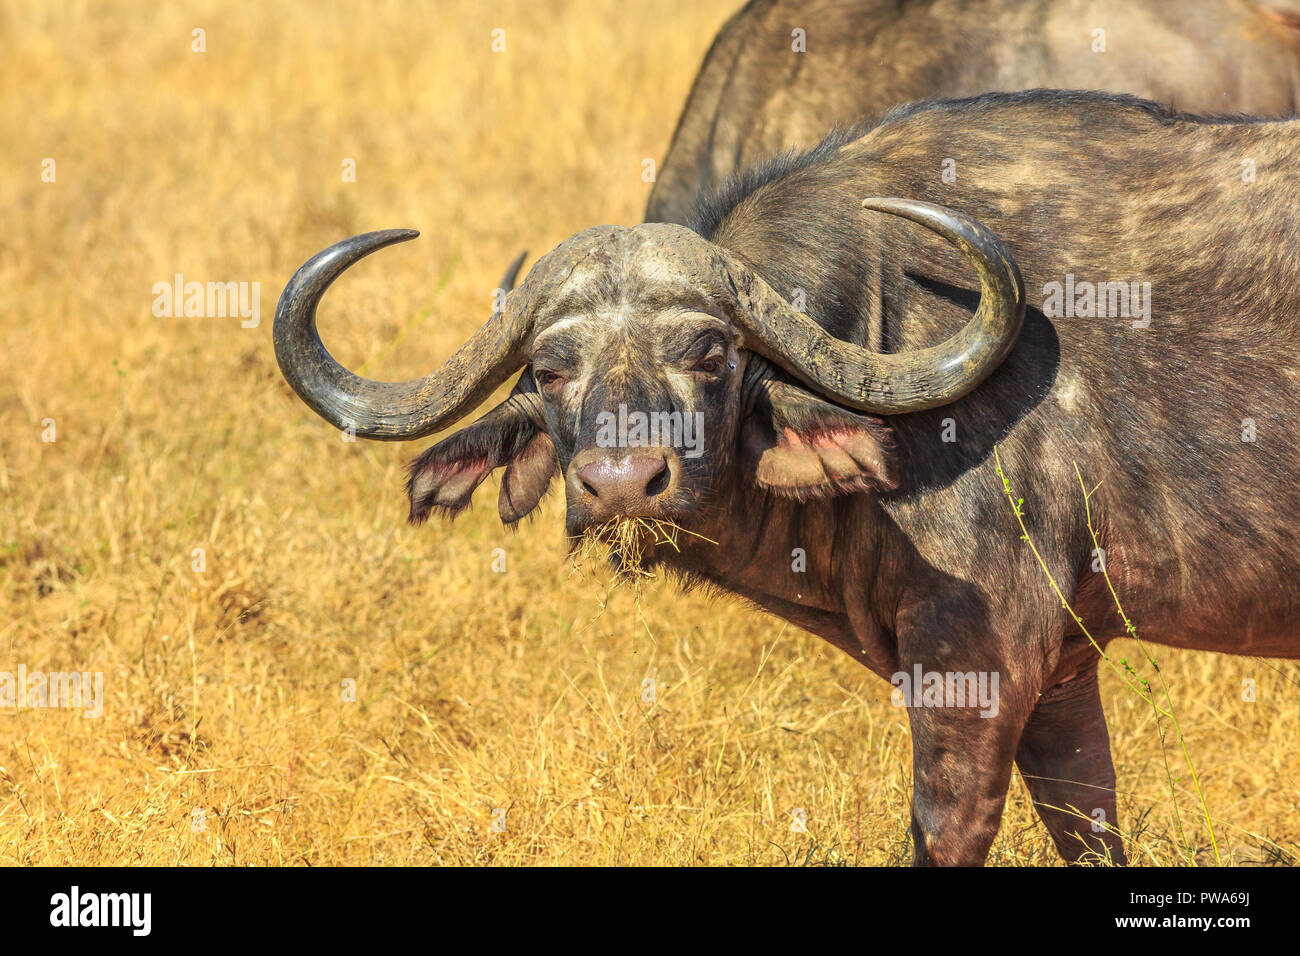 Nahaufnahme des Gesichts des afrikanischen Büffel, Syncerus caffer, im Grünland Natur, trockenen Jahreszeit. Krüger Nationalpark in Südafrika. Der Büffel ist eine große afrikanische Rinder Teil der beliebten Big Five. Stockfoto